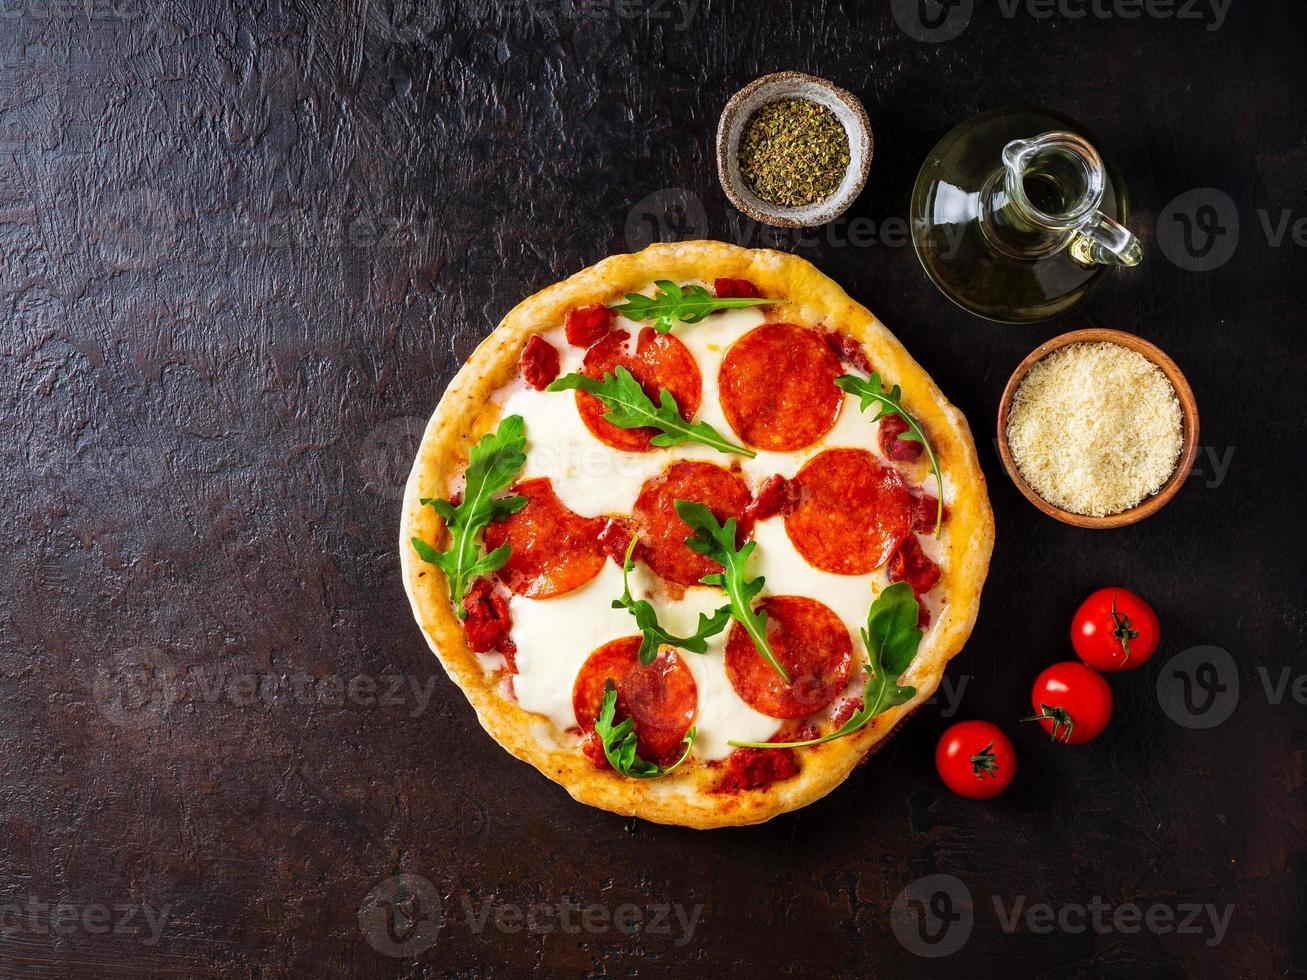 pizza de pepperoni italiana casera caliente con salami, mozzarella en una mesa de piedra marrón oscura, vista superior, espacio para copiar foto